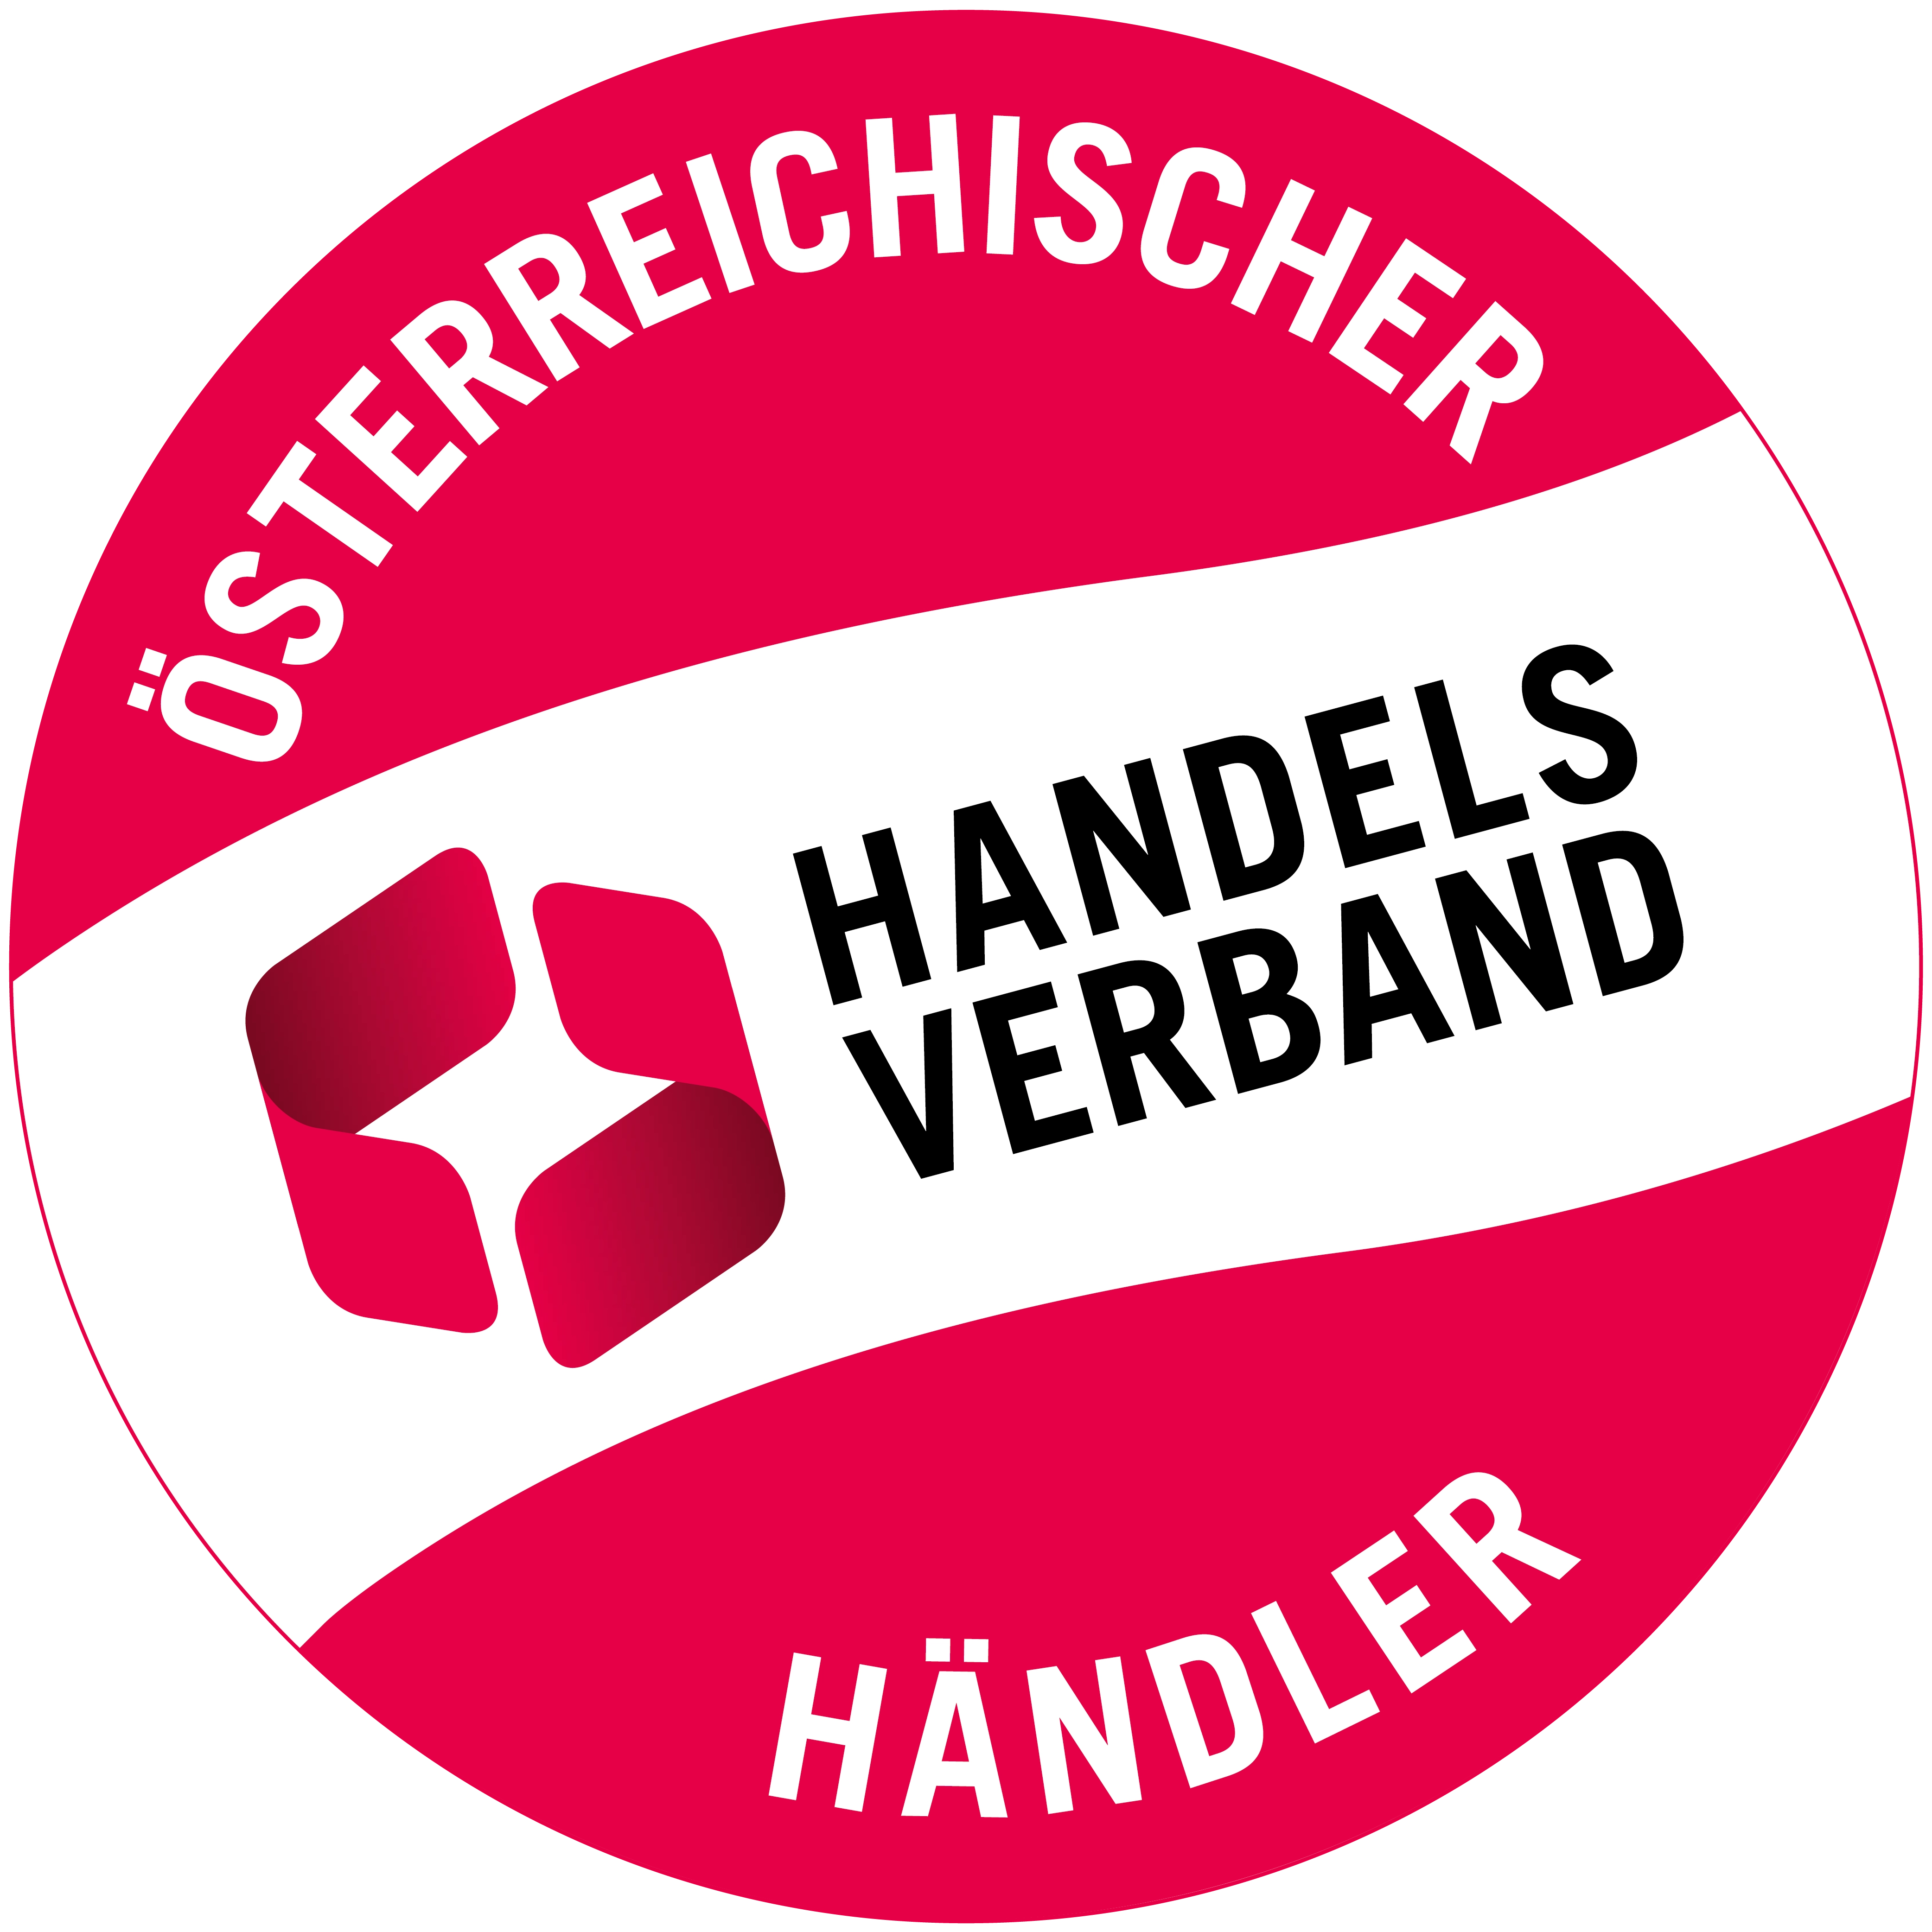 Handels verband österreichischer Händler logo